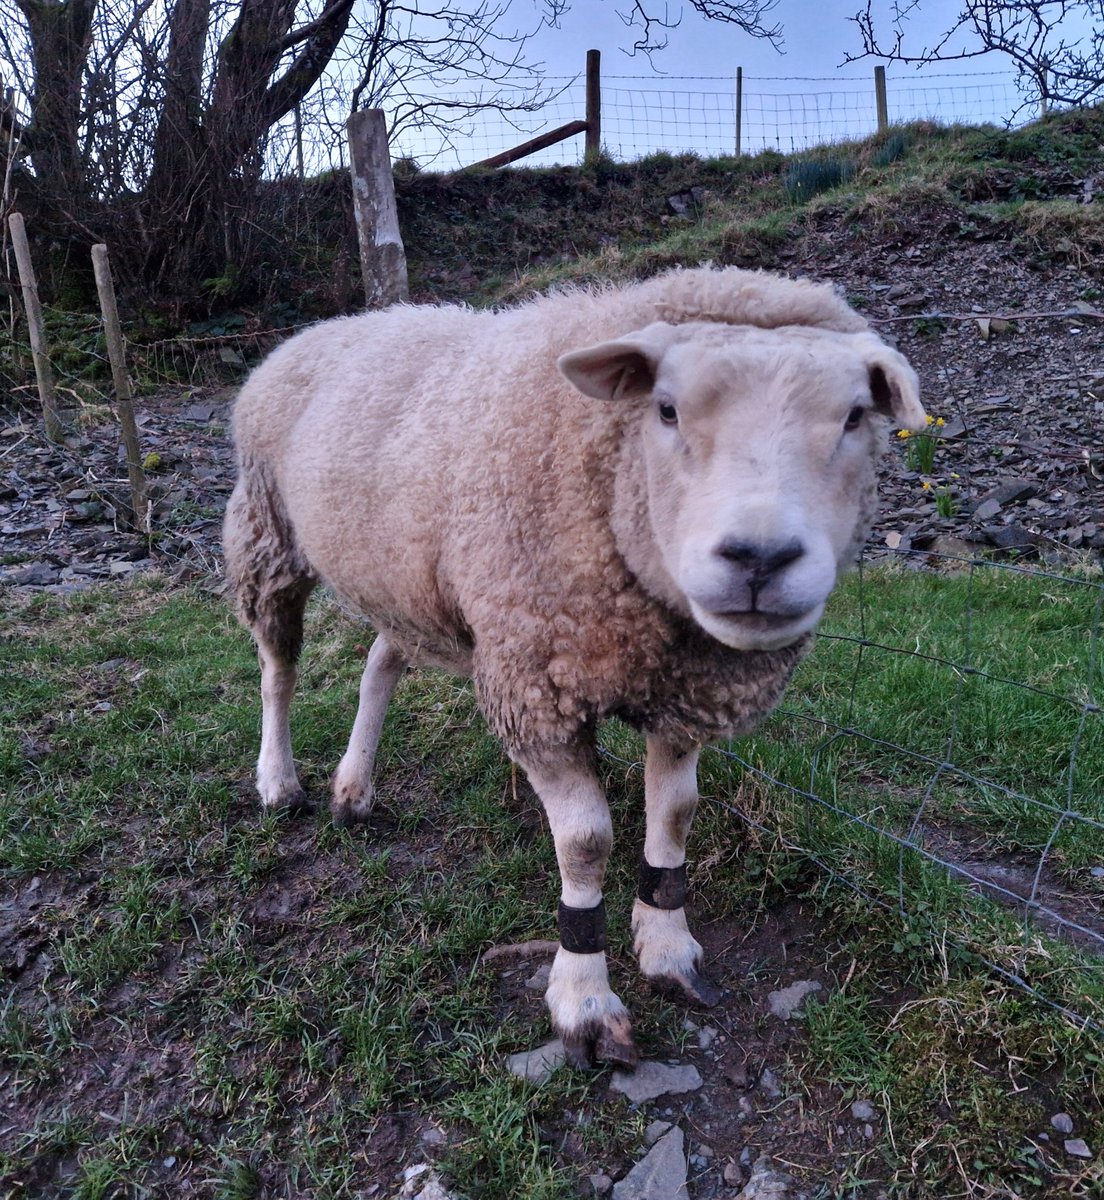 💙Denis💙

#animalsanctuary #sheep365 #sheep #texelsheep #nonprofit #amazonwishlist #animallovers #foreverhome 

woollypatchworksheepsanctuary.uk